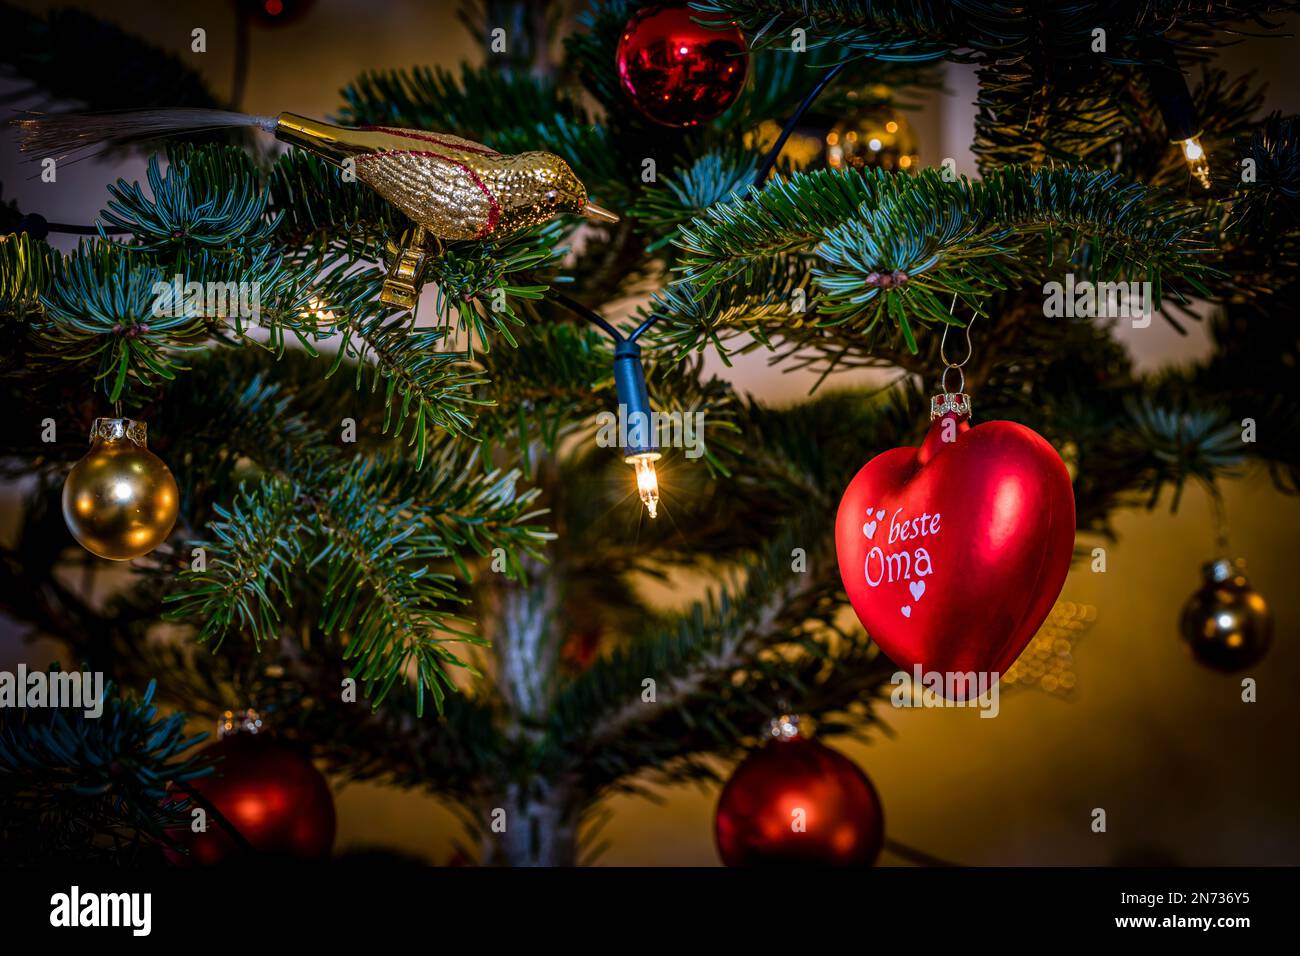 Primeros planos de un árbol de Navidad decorado, un abeto Nordmann con bolas rojas y amarillas e iluminación con velas eléctricas, un ambiente hogareño y festivo, Foto de stock